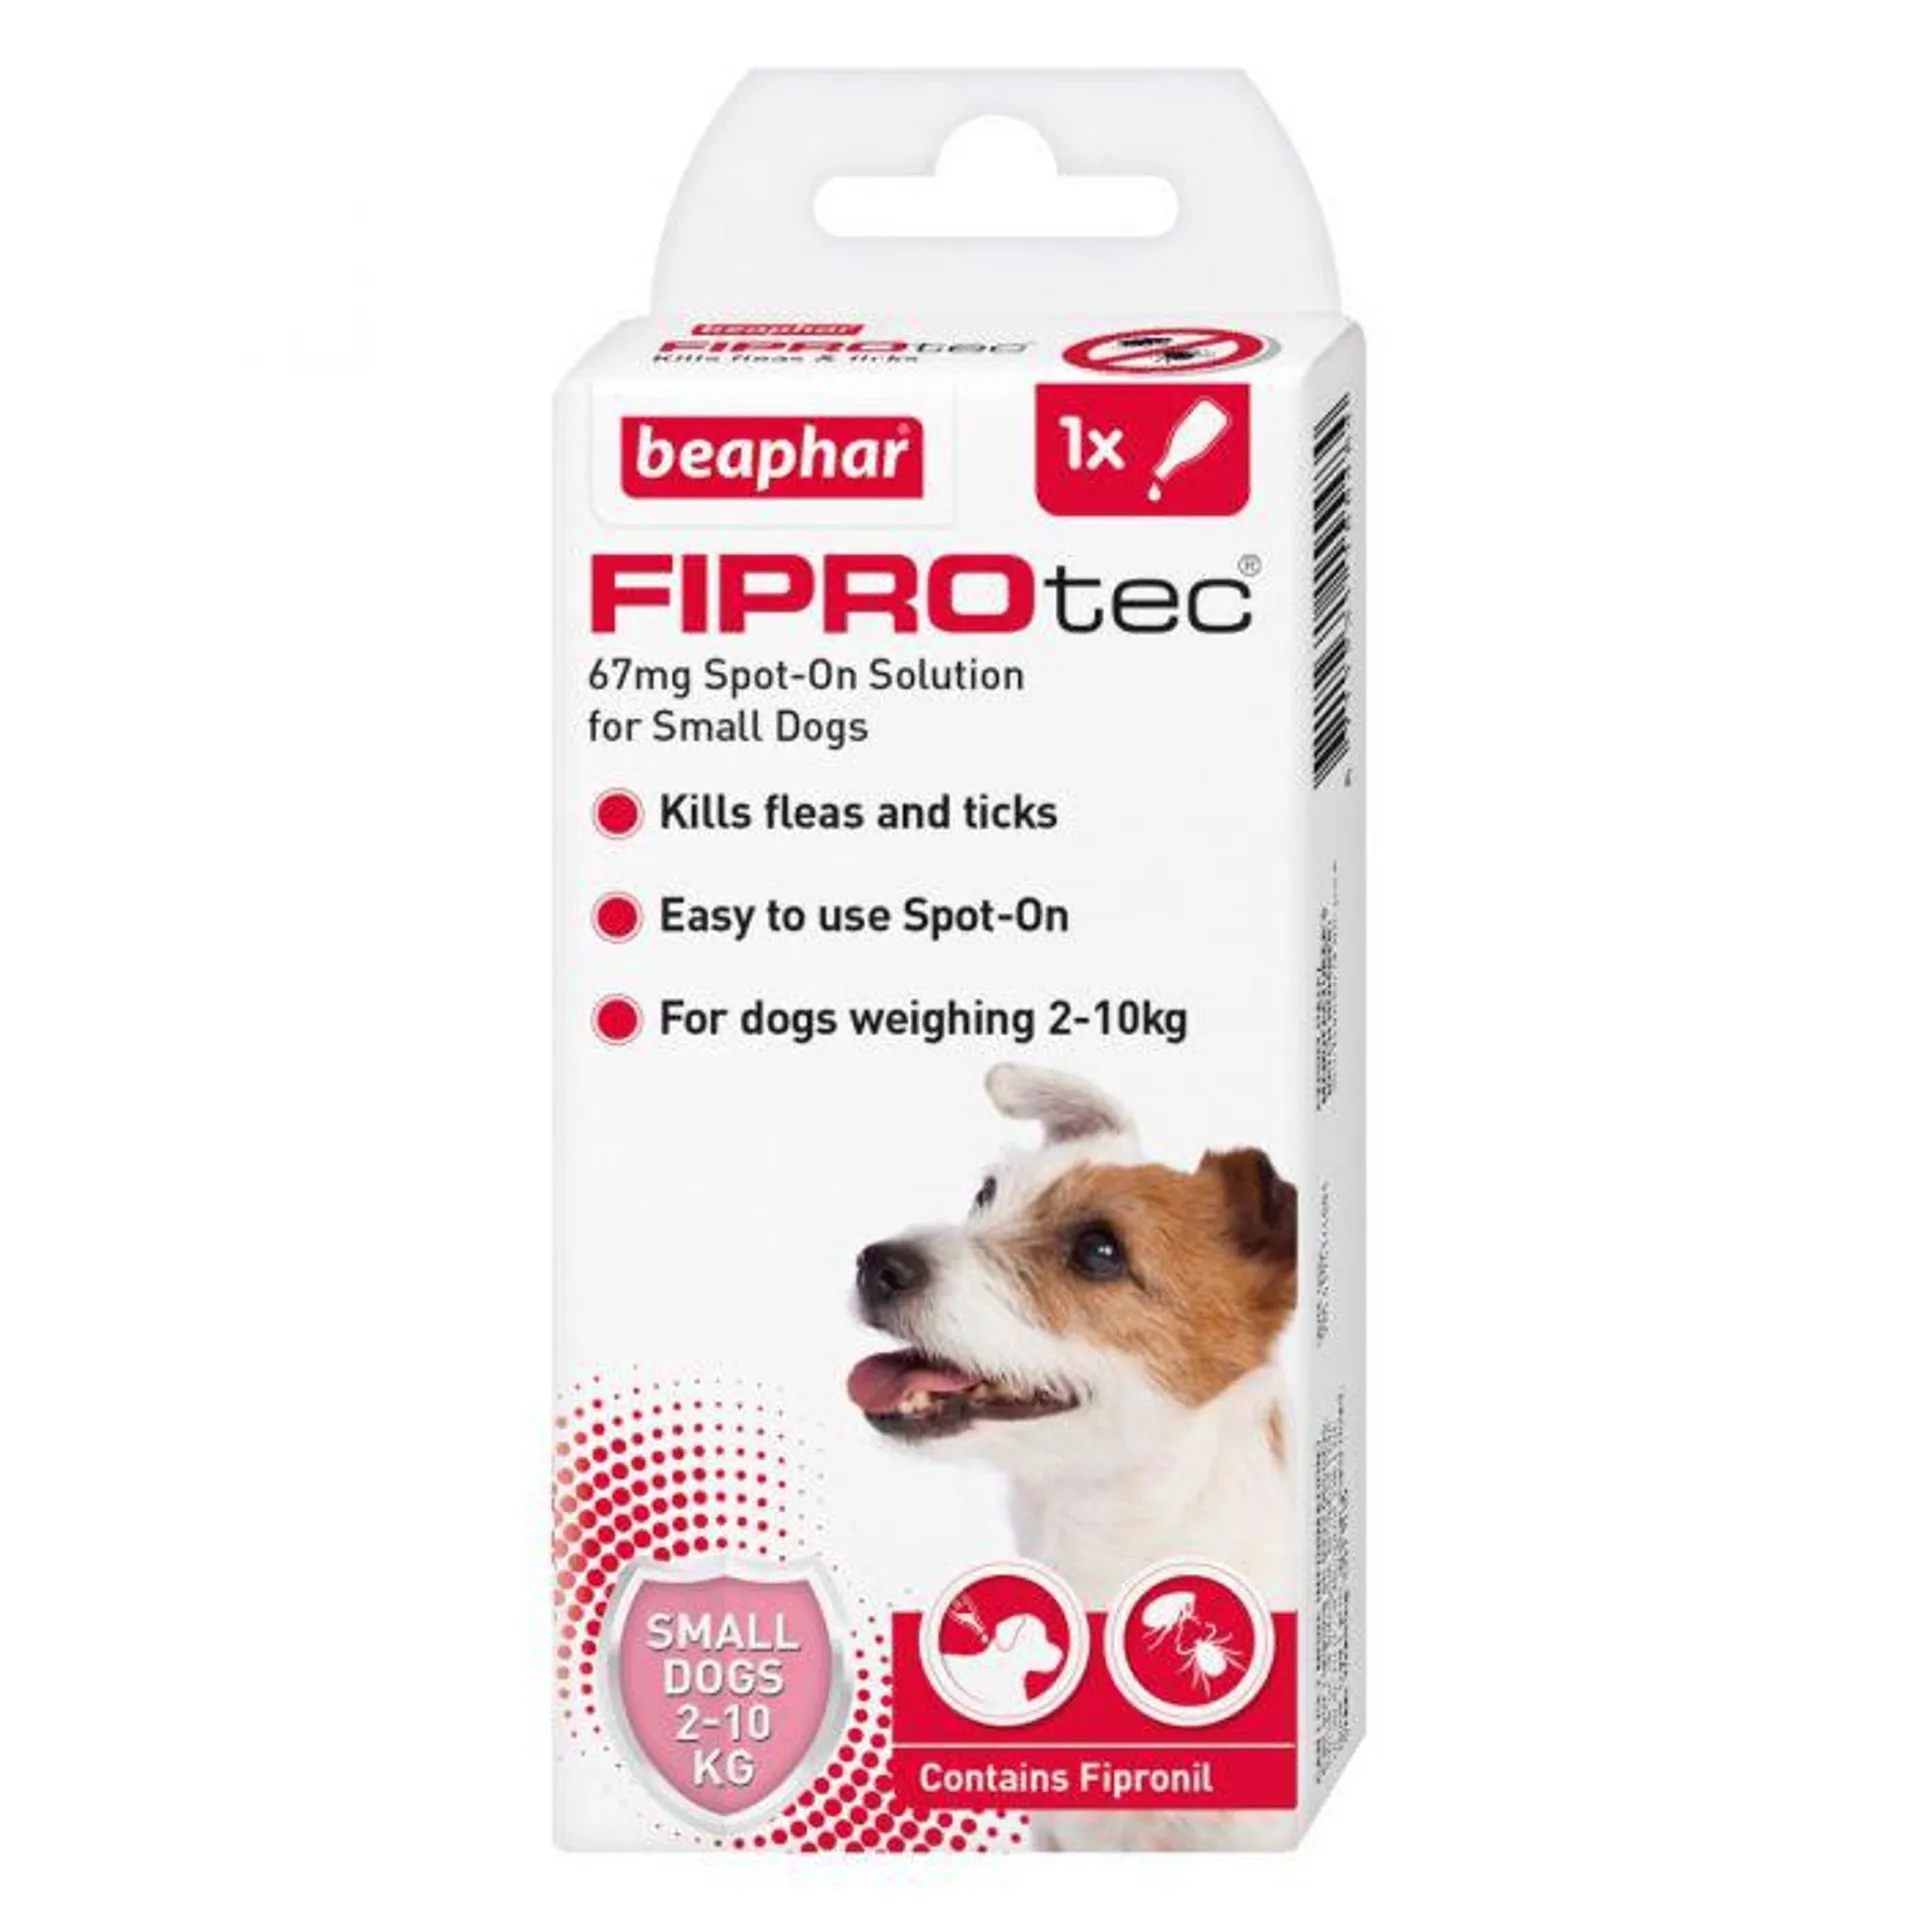 Beaphar FIPROtec Spot-On for Small Dogs